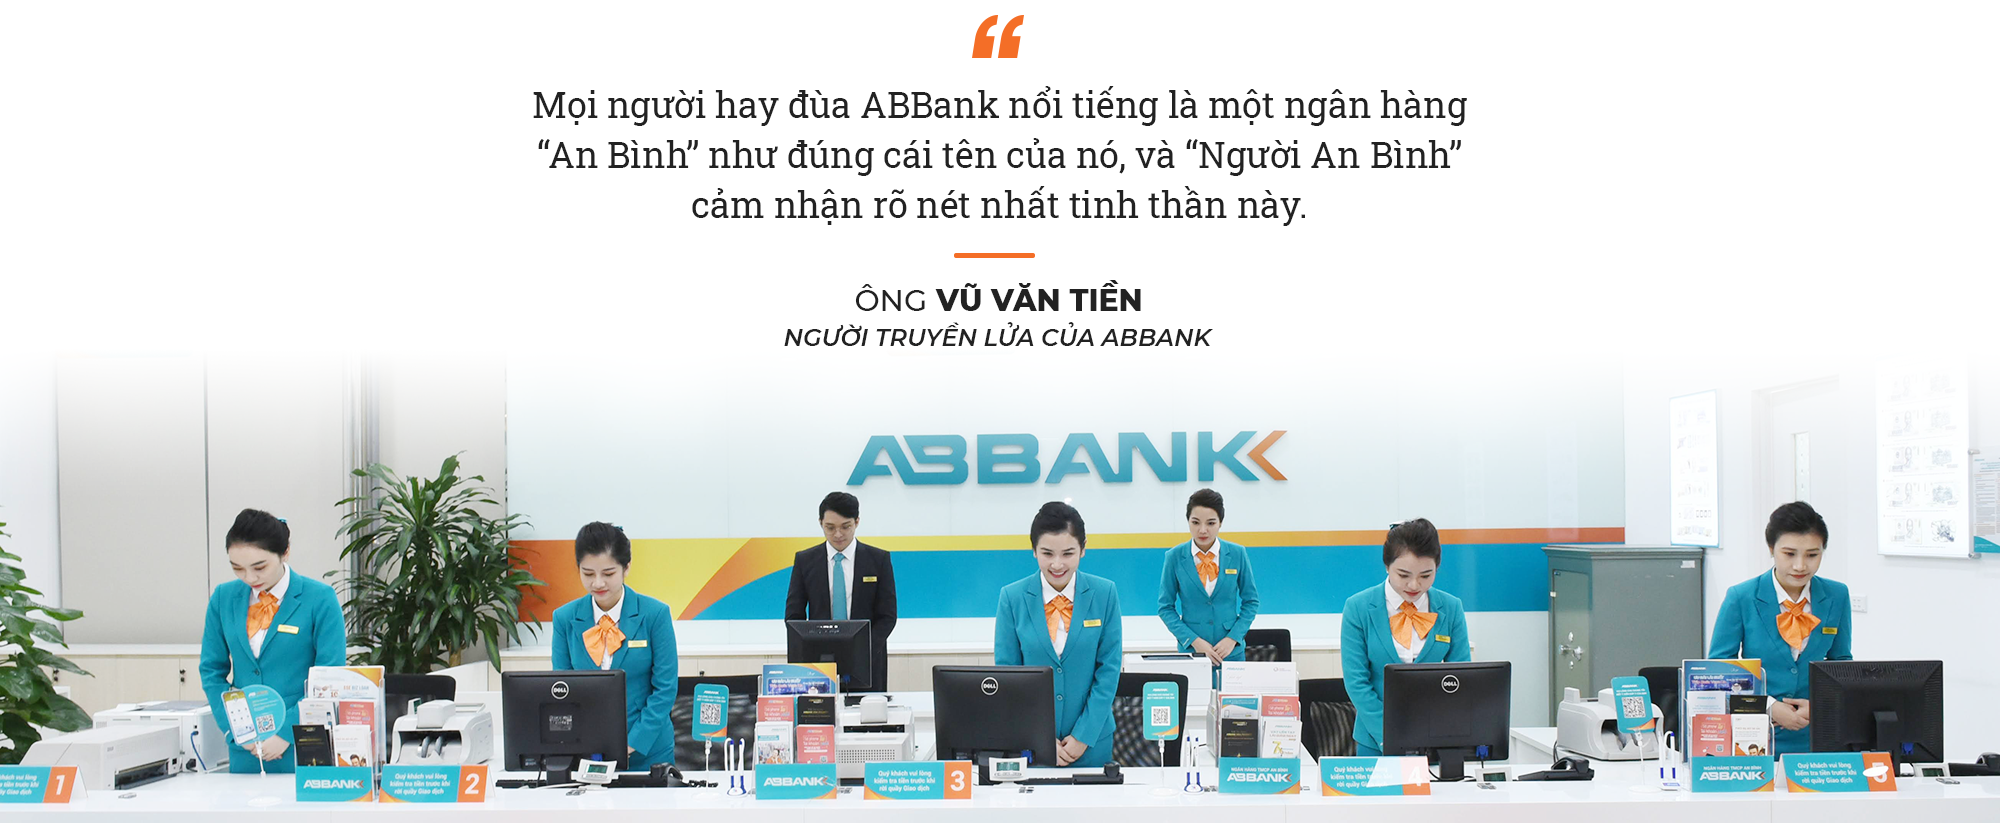 ABBank: 30 năm phát triển dưới góc nhìn của “Người truyền lửa” Vũ Văn Tiền - Ảnh 3.